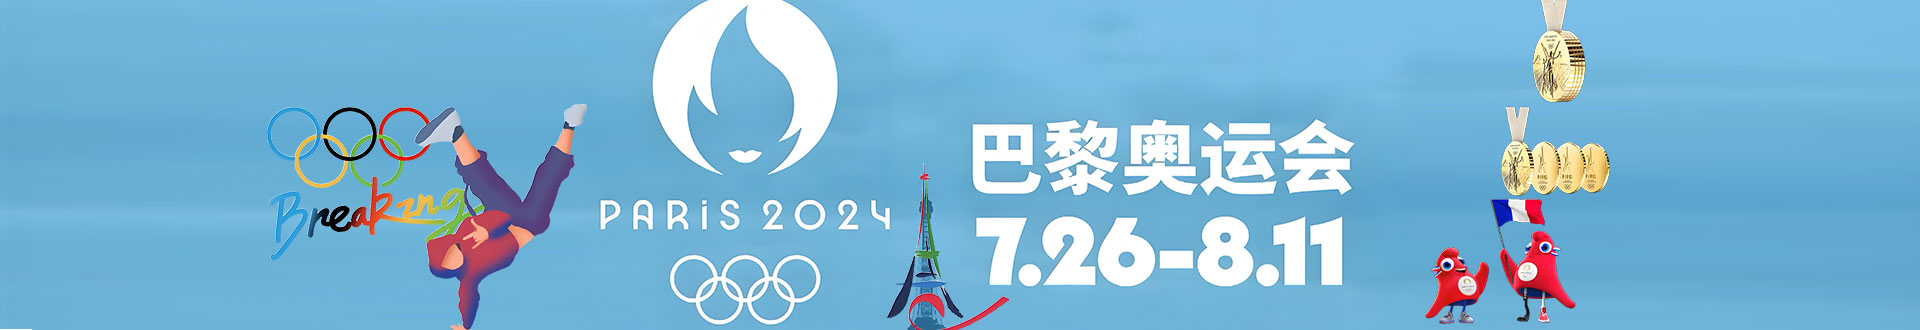 2024巴黎奥运会奖牌榜